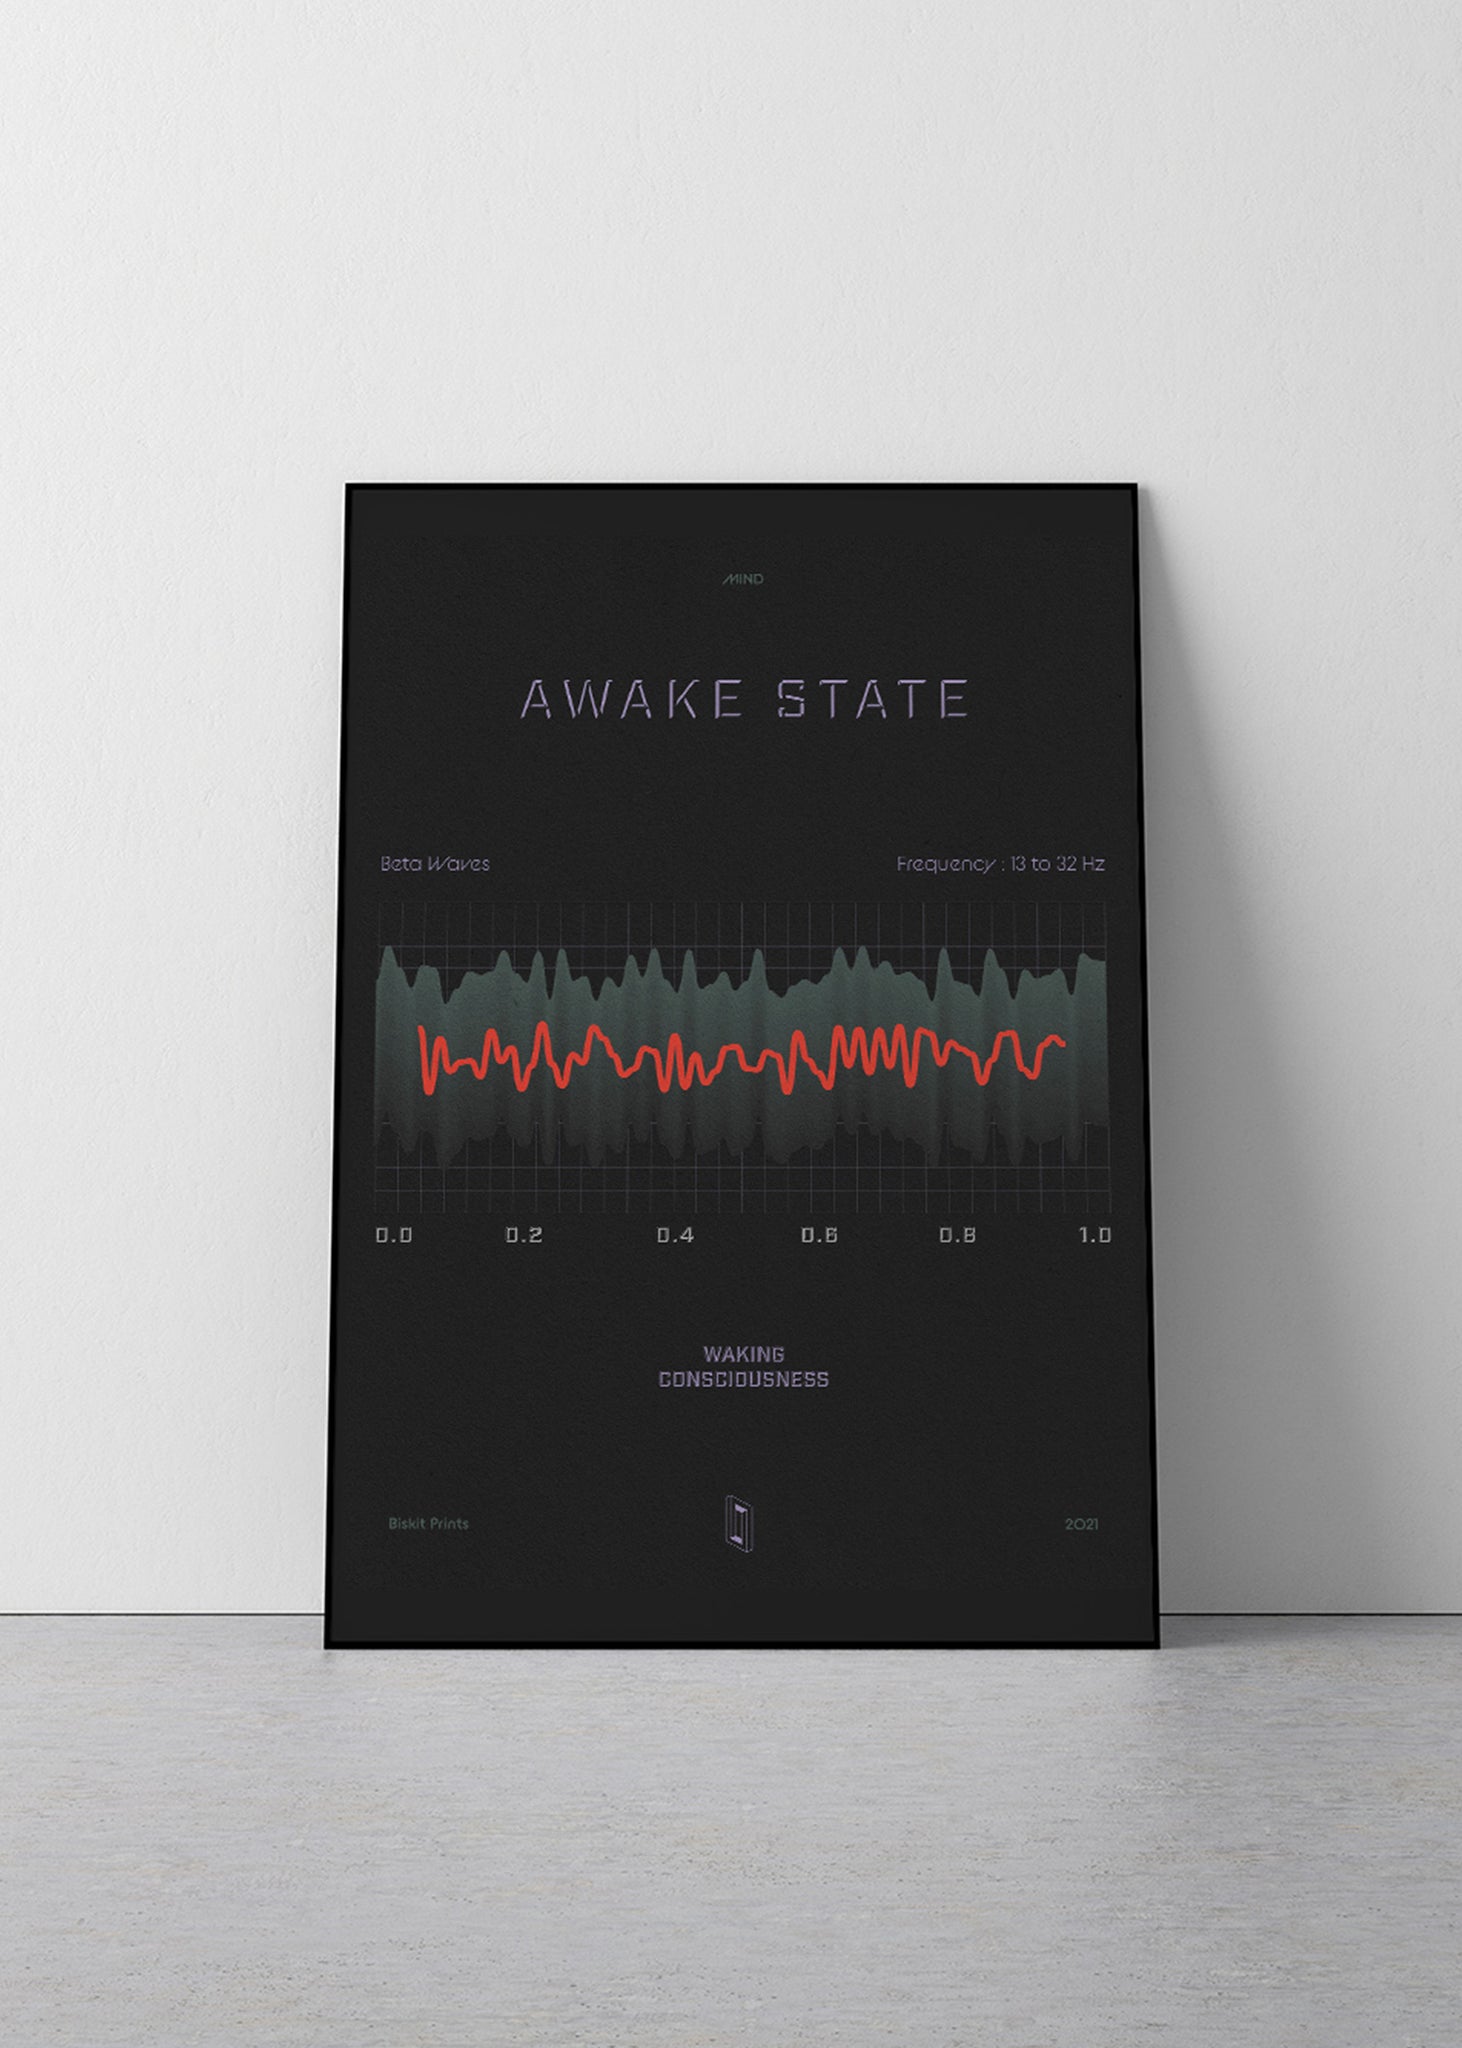 Awake State